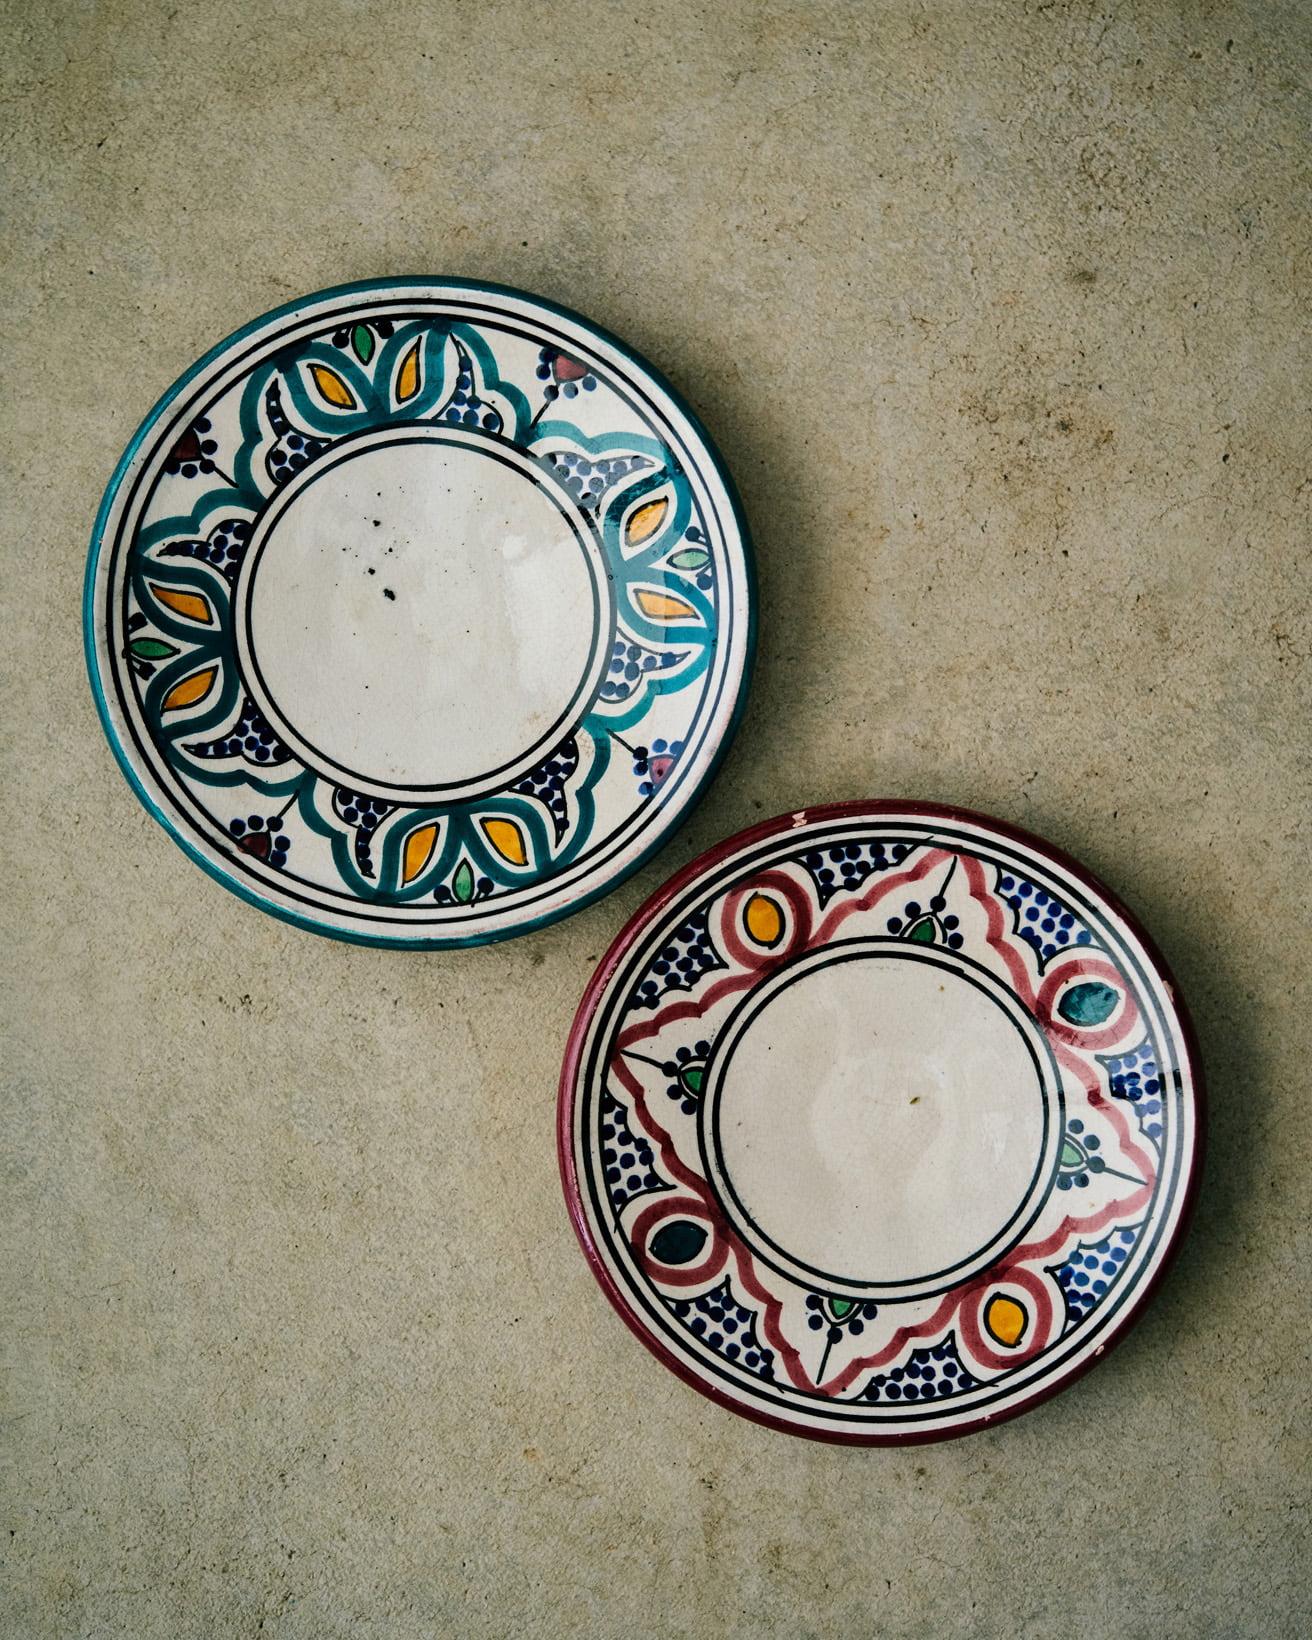 旅行でモロッコを訪れたとき、独特なエキゾチックな絵柄のお皿がすばらしすぎて好きすぎて、現地で腕がちぎれそうになるくらい買いました。大小購入しましたが、こういう小さいお皿はむしろお土産屋さんっぽいところの方がよく揃っていました。